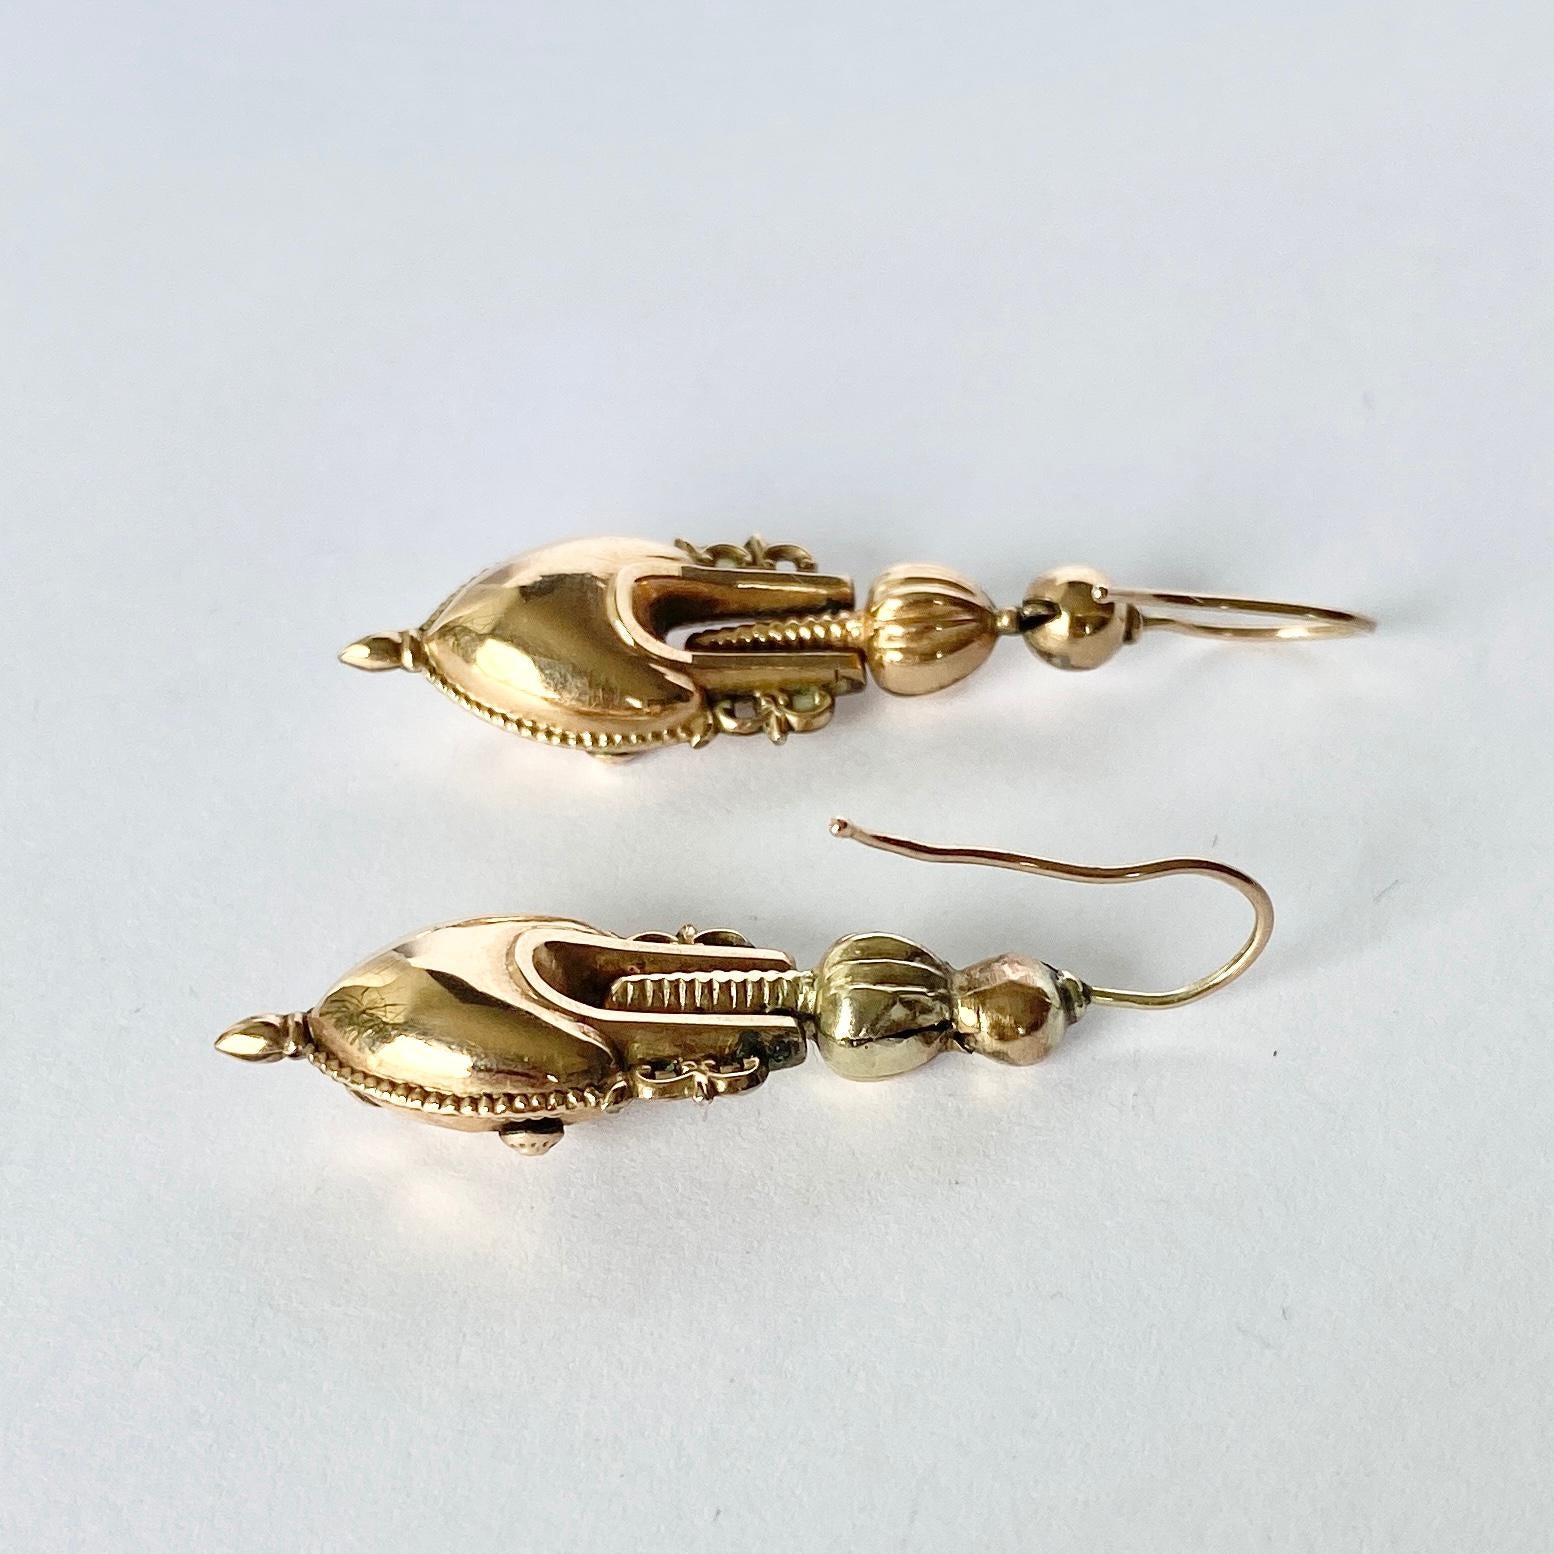 Diese atemberaubenden Ohrringe sind mit vielen komplizierten Details versehen und haben die Form einer Amphore. Sie sind in hervorragendem Zustand. Modelliert aus 9-karätigem Gold. 

Tropfen vom Ohr: 4cm 

Gewicht: 3,1 g